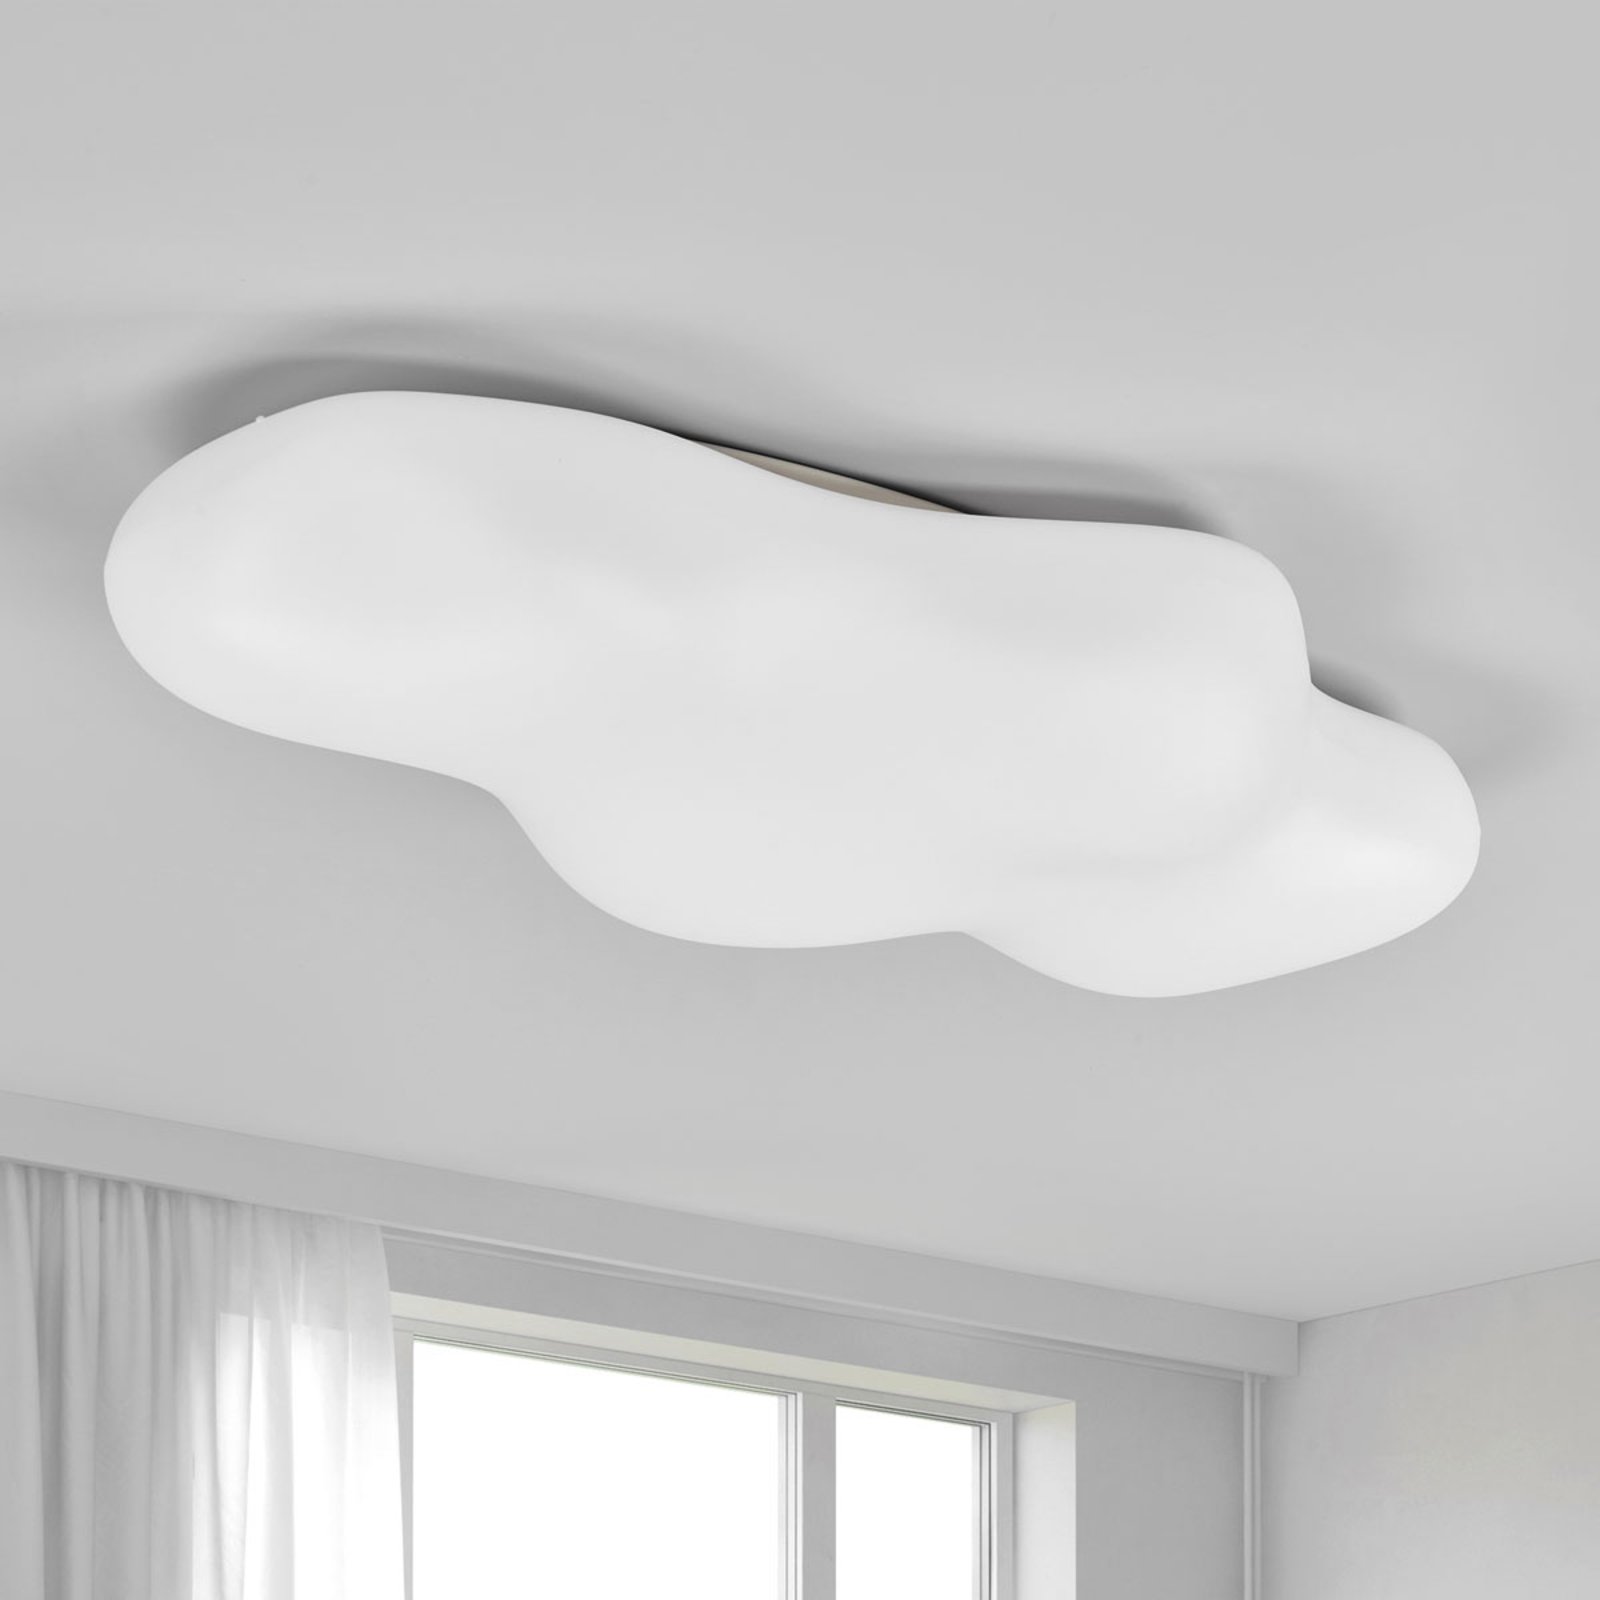 Lampa sufitowa EOS w kształcie chmury, 90 cm